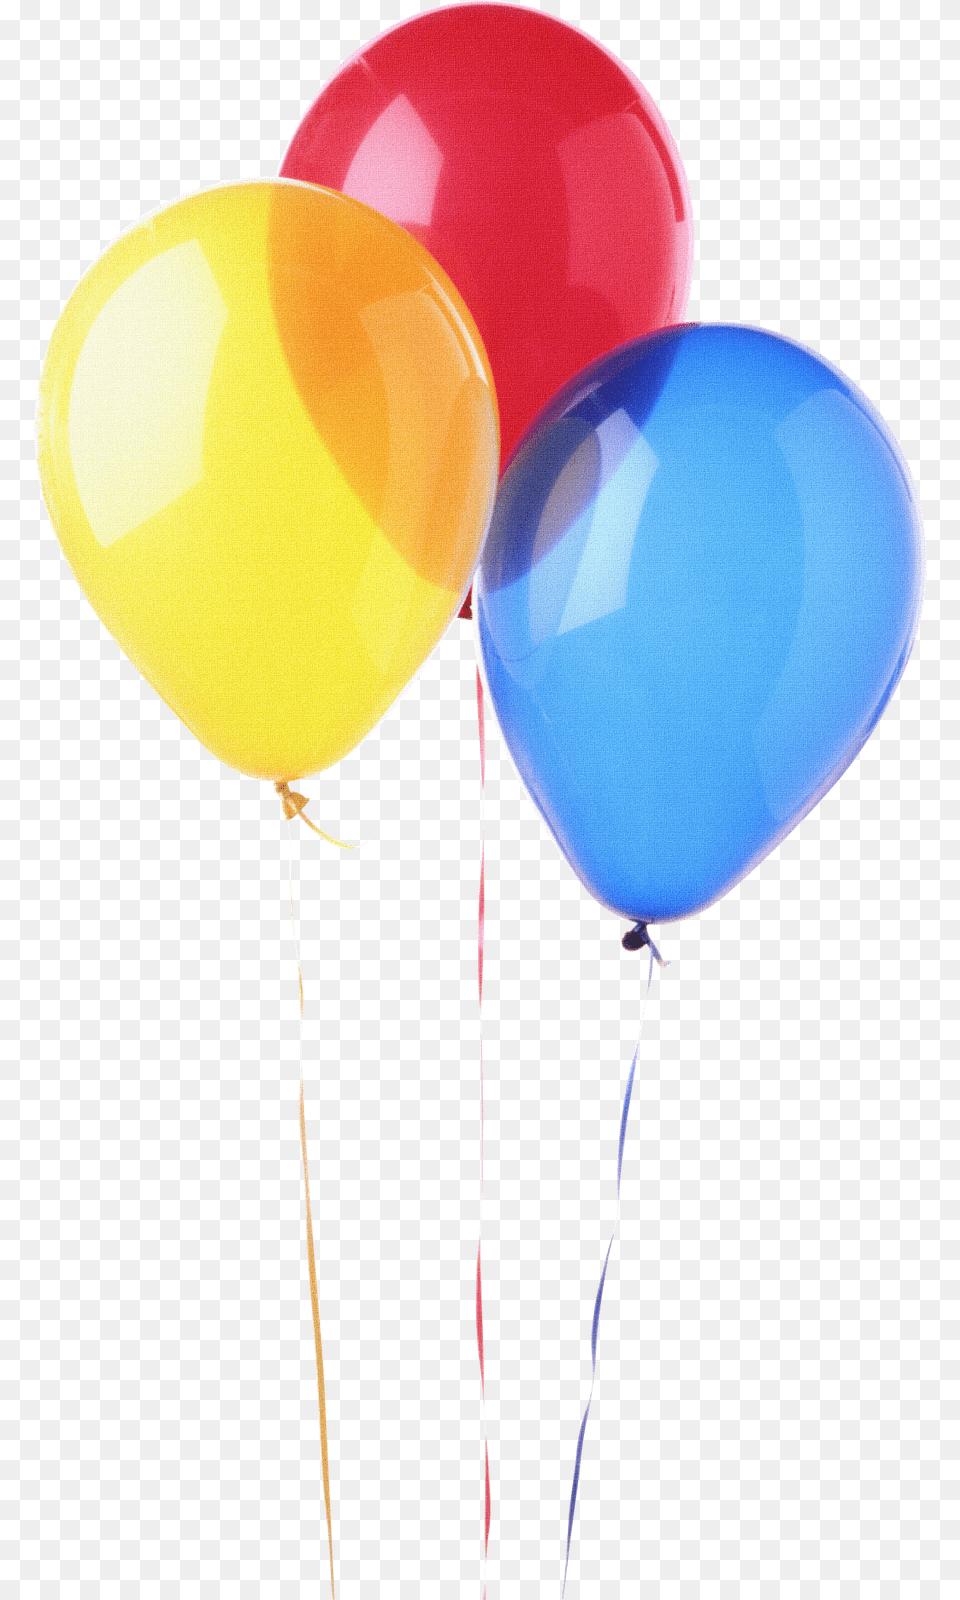 Bolas De Aniversario Balloons No Background, Balloon Free Transparent Png